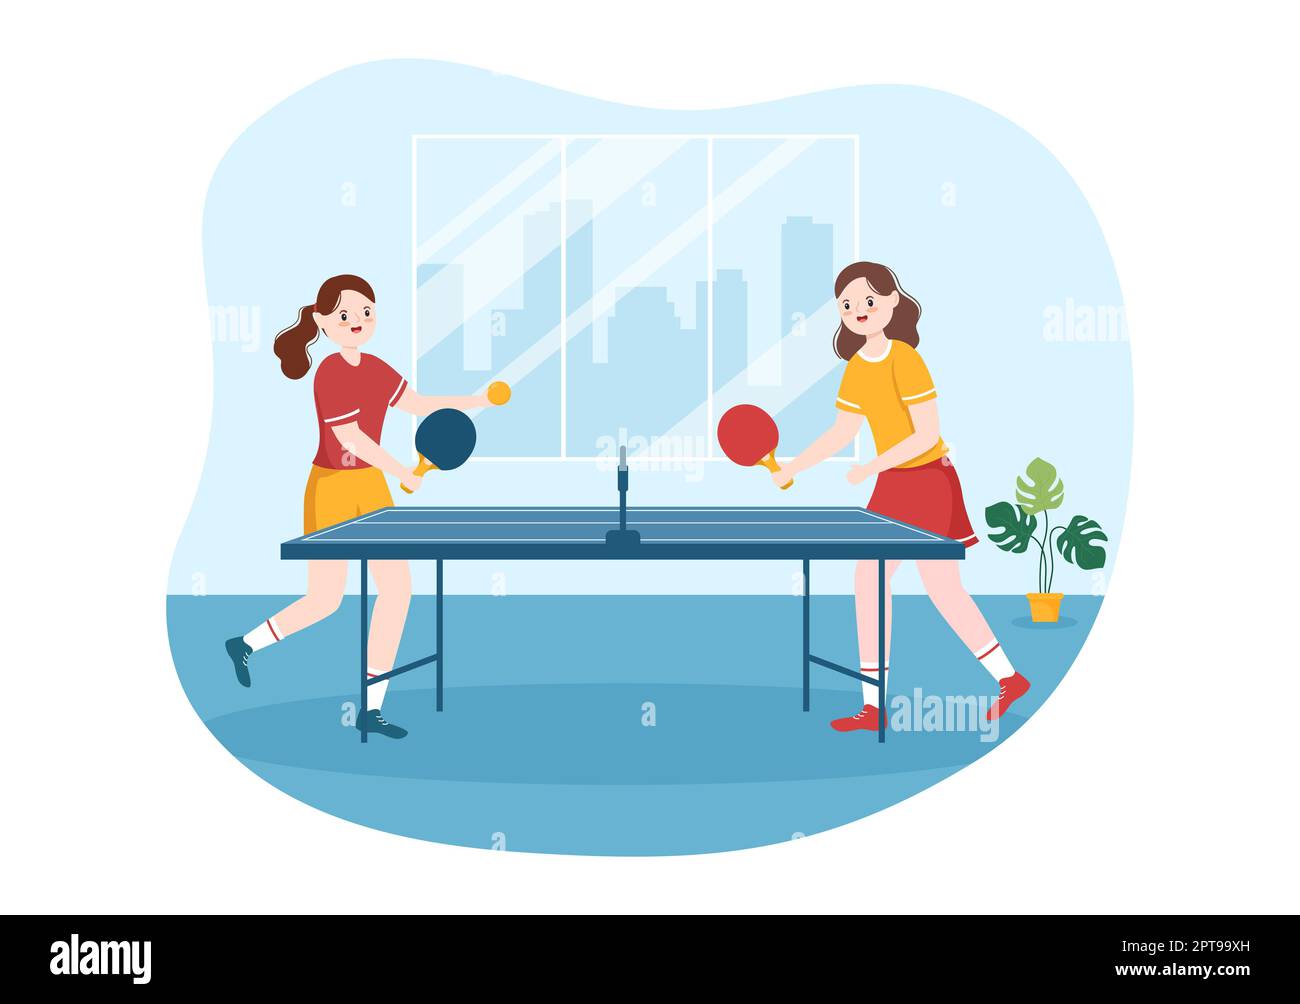 Les gens qui jouent au tennis de table Sports avec raquette et balle de ping -pong jeu match dans le dessin-modèle de dessin main de dessin-modèle Photo  Stock - Alamy